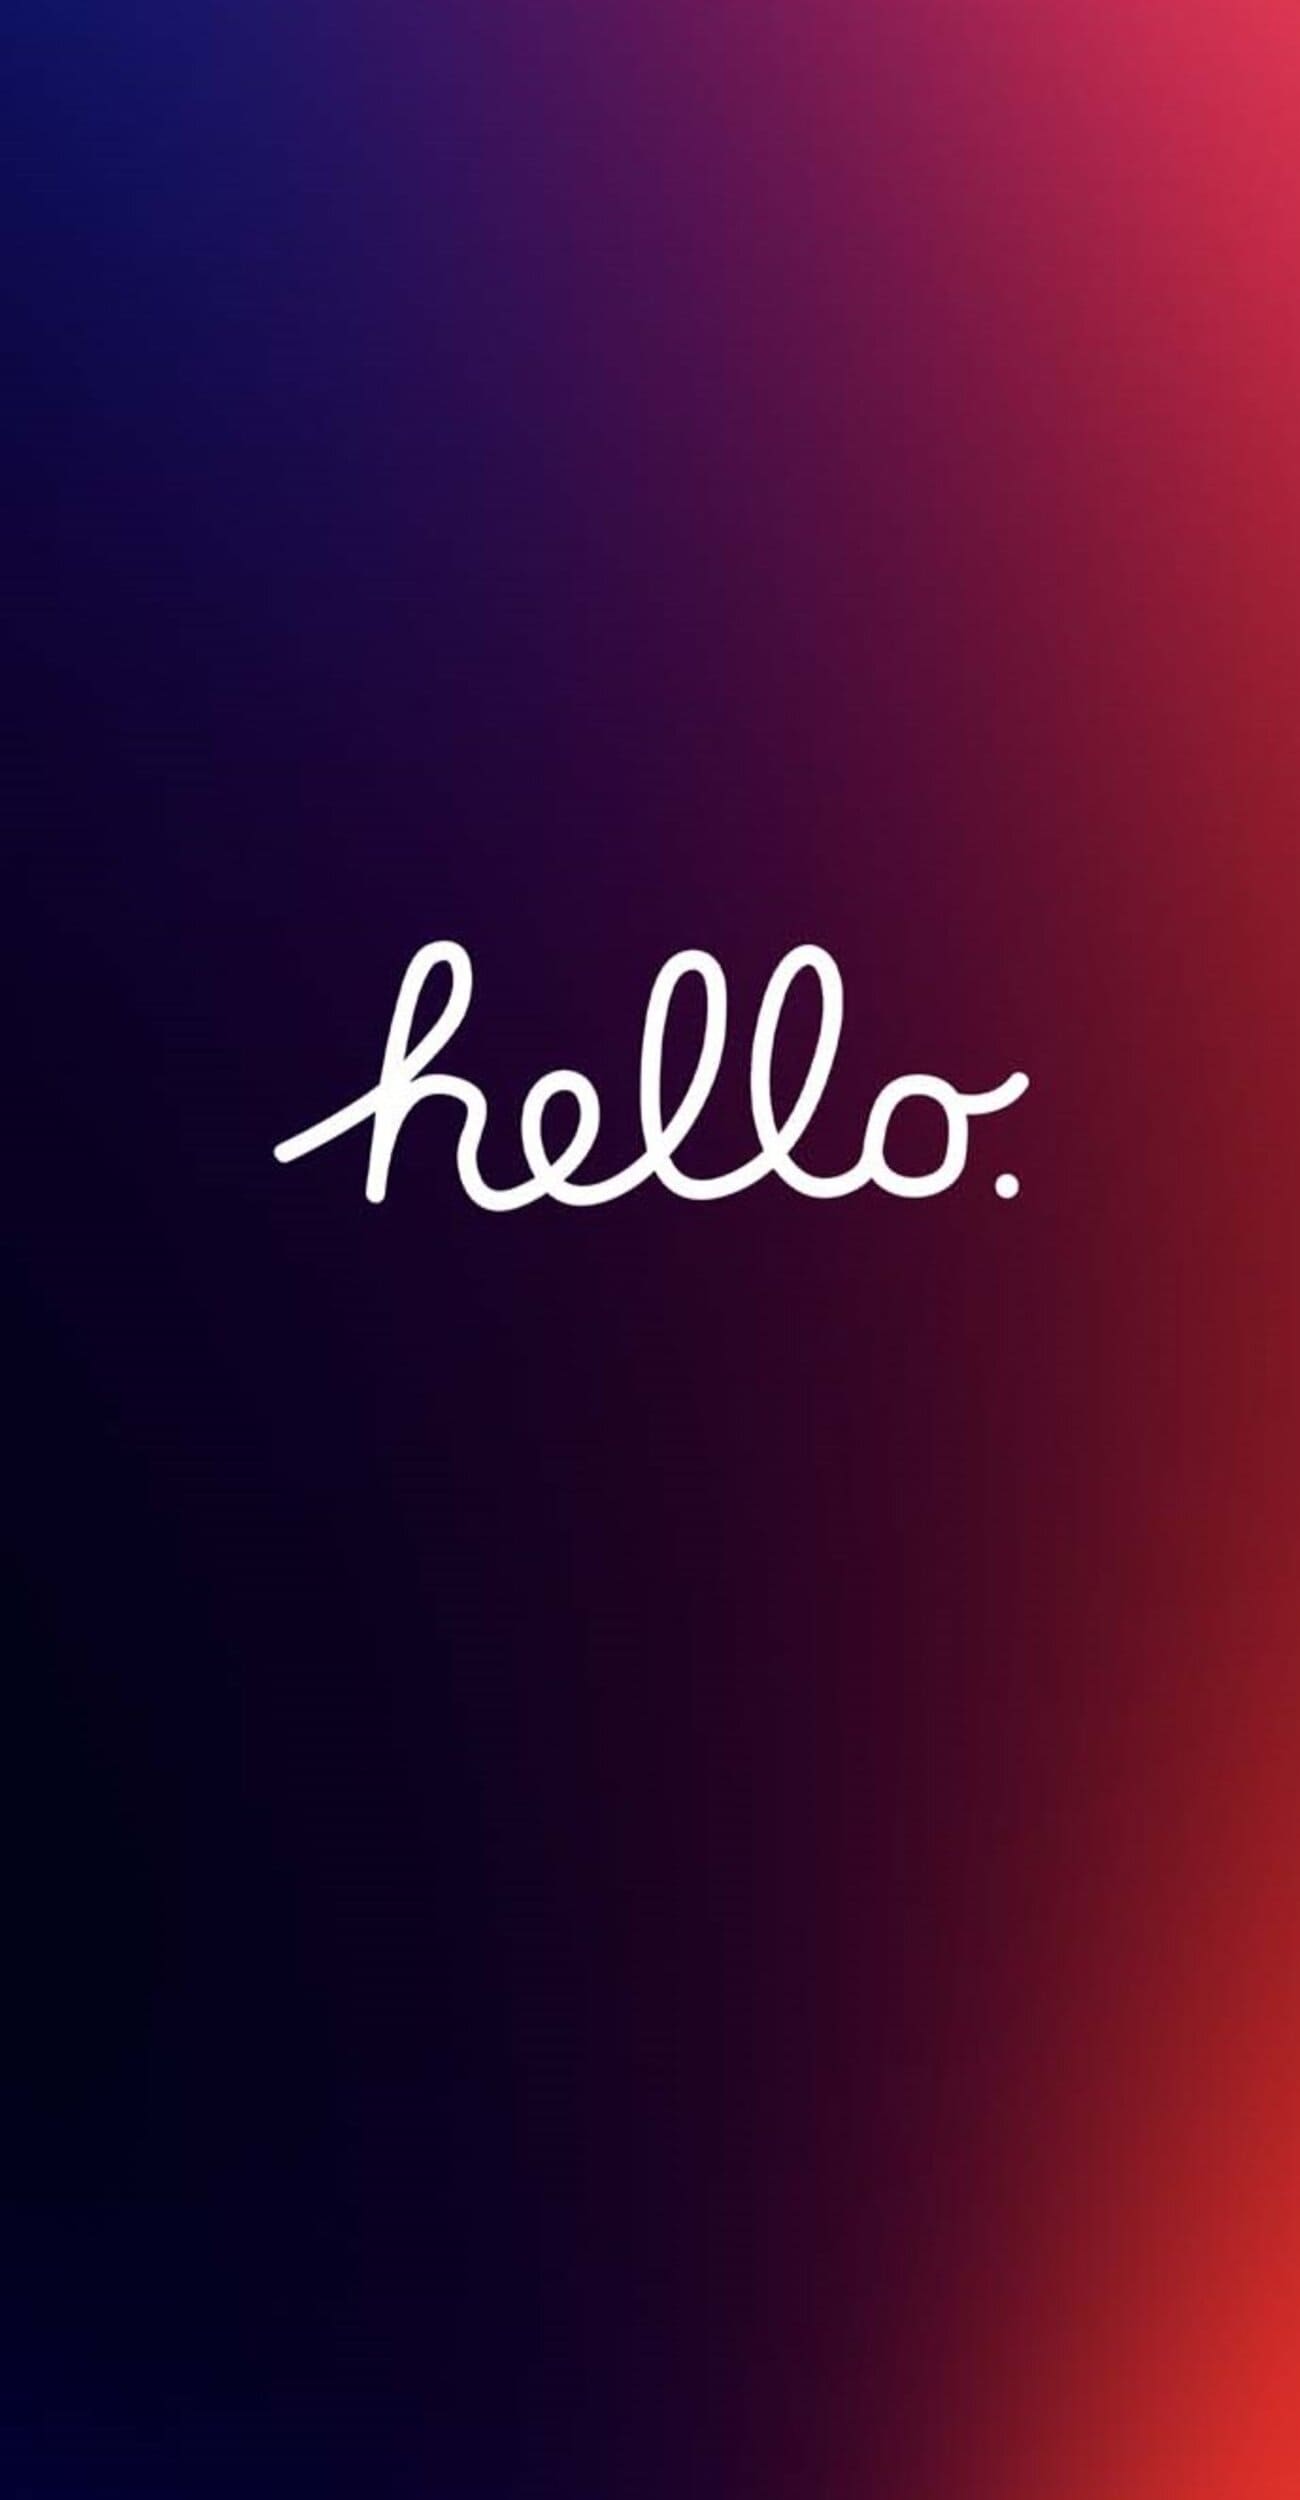 خلفية ايفون حمراء وزرقاء مع كلمة Hello بالإنجليزي فخمه جداً بجودة 4K